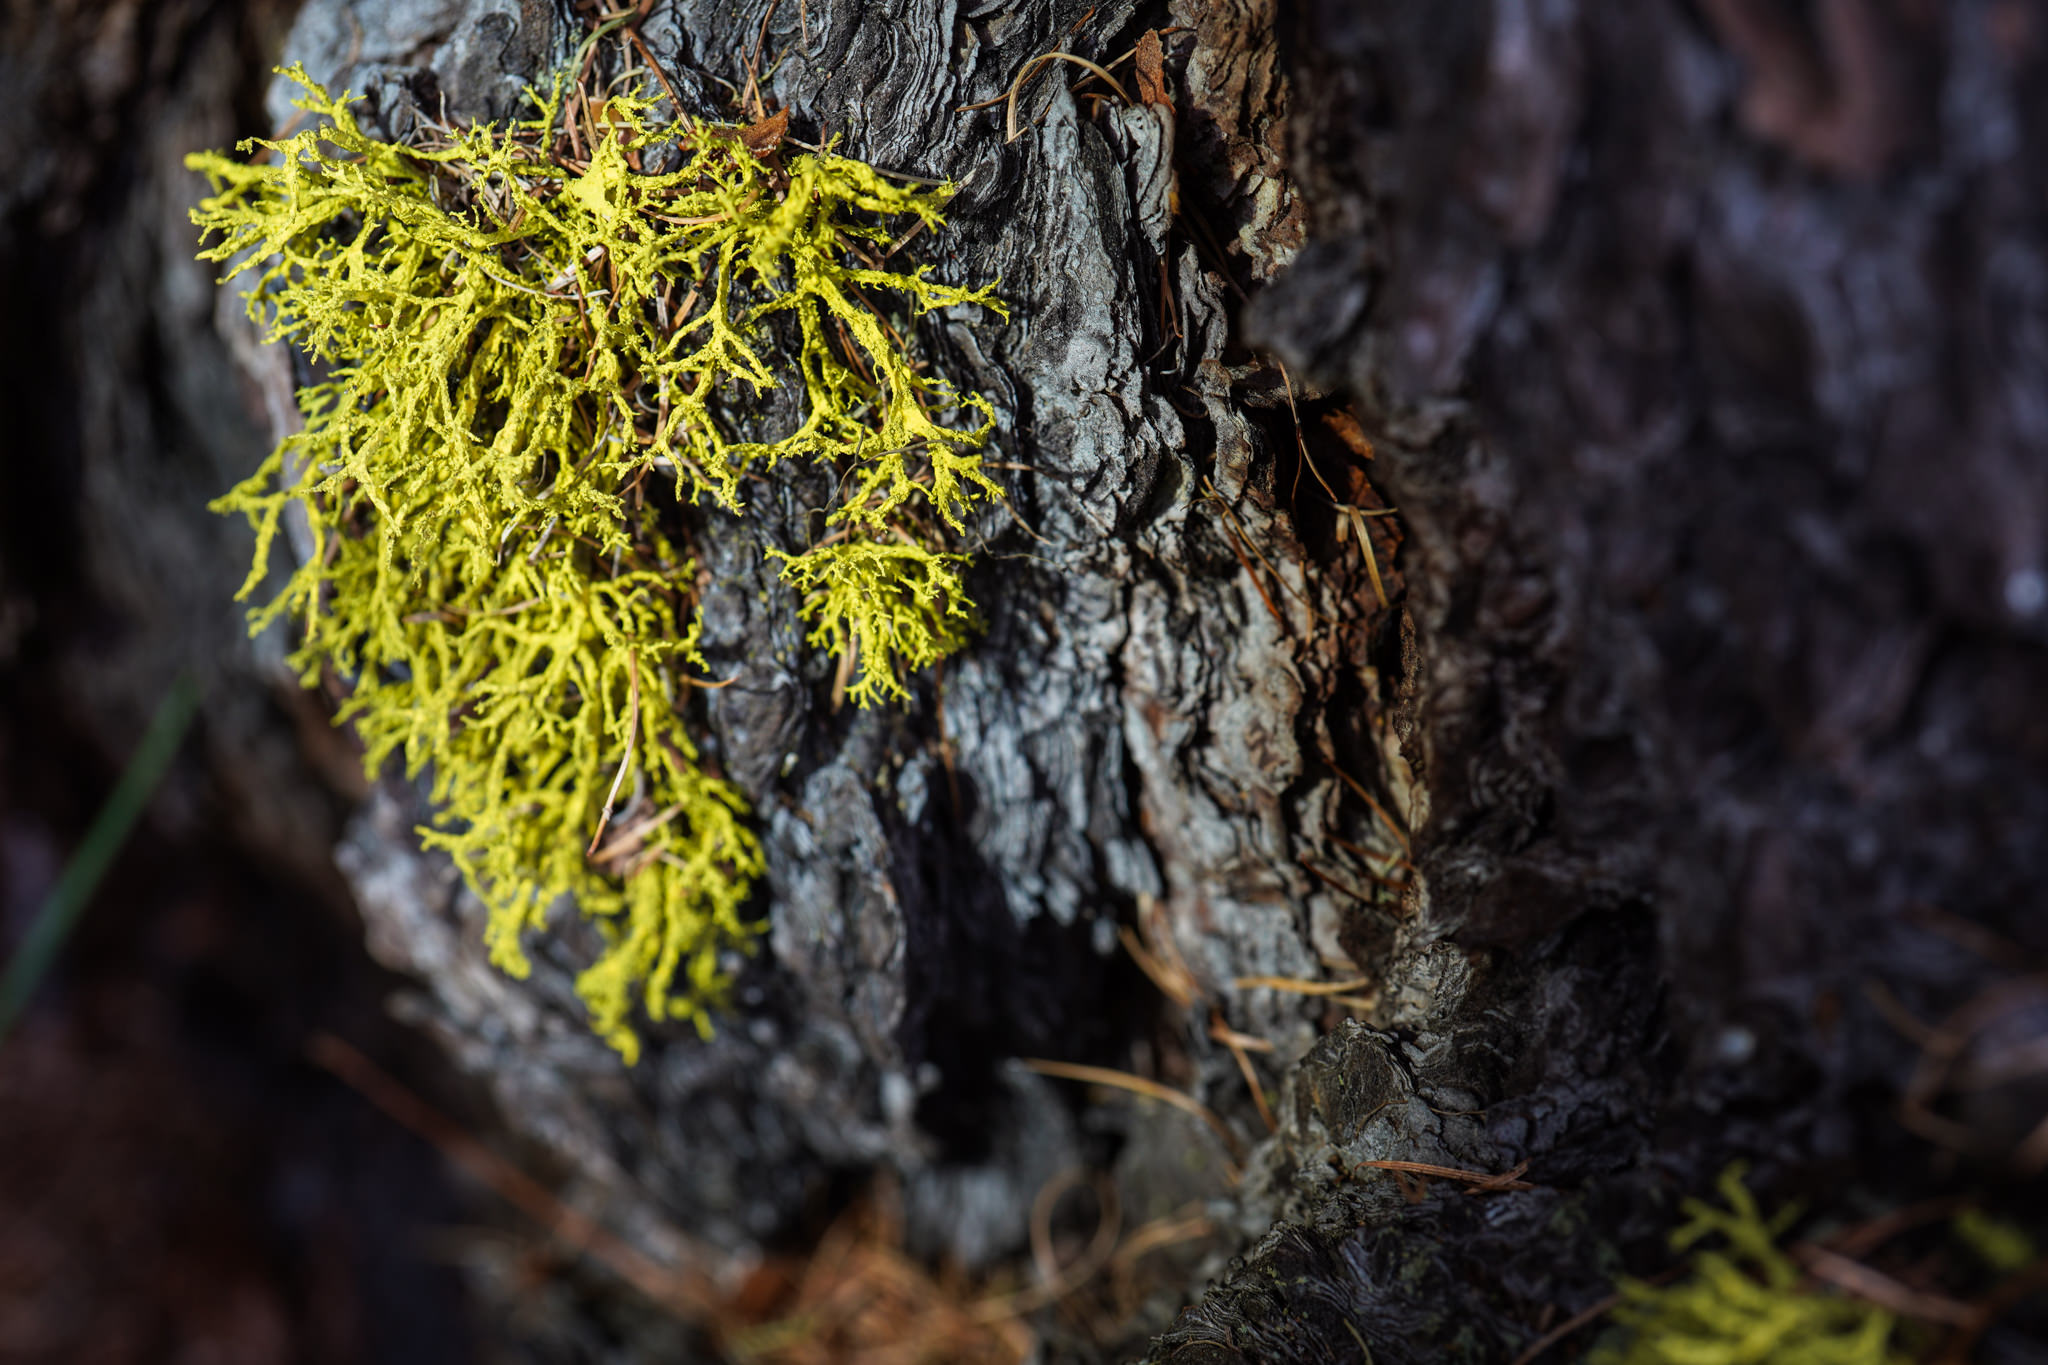 Fotowochenende in Spinas Teil 3 – Makrobilder aus dem Wald